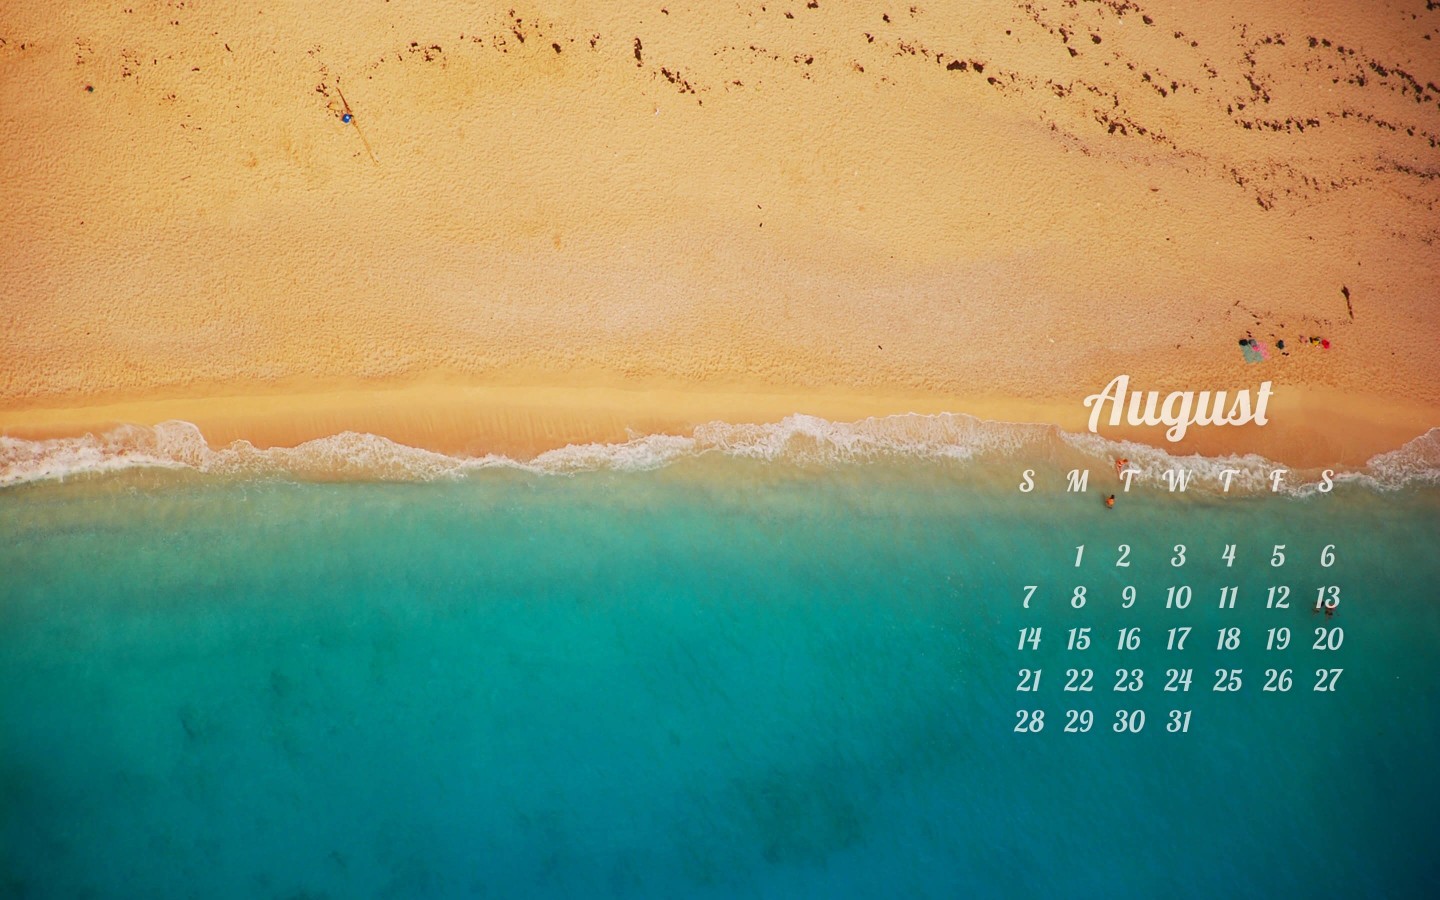 August 2016 Calendar Wallpaper for Desktop 1440x900